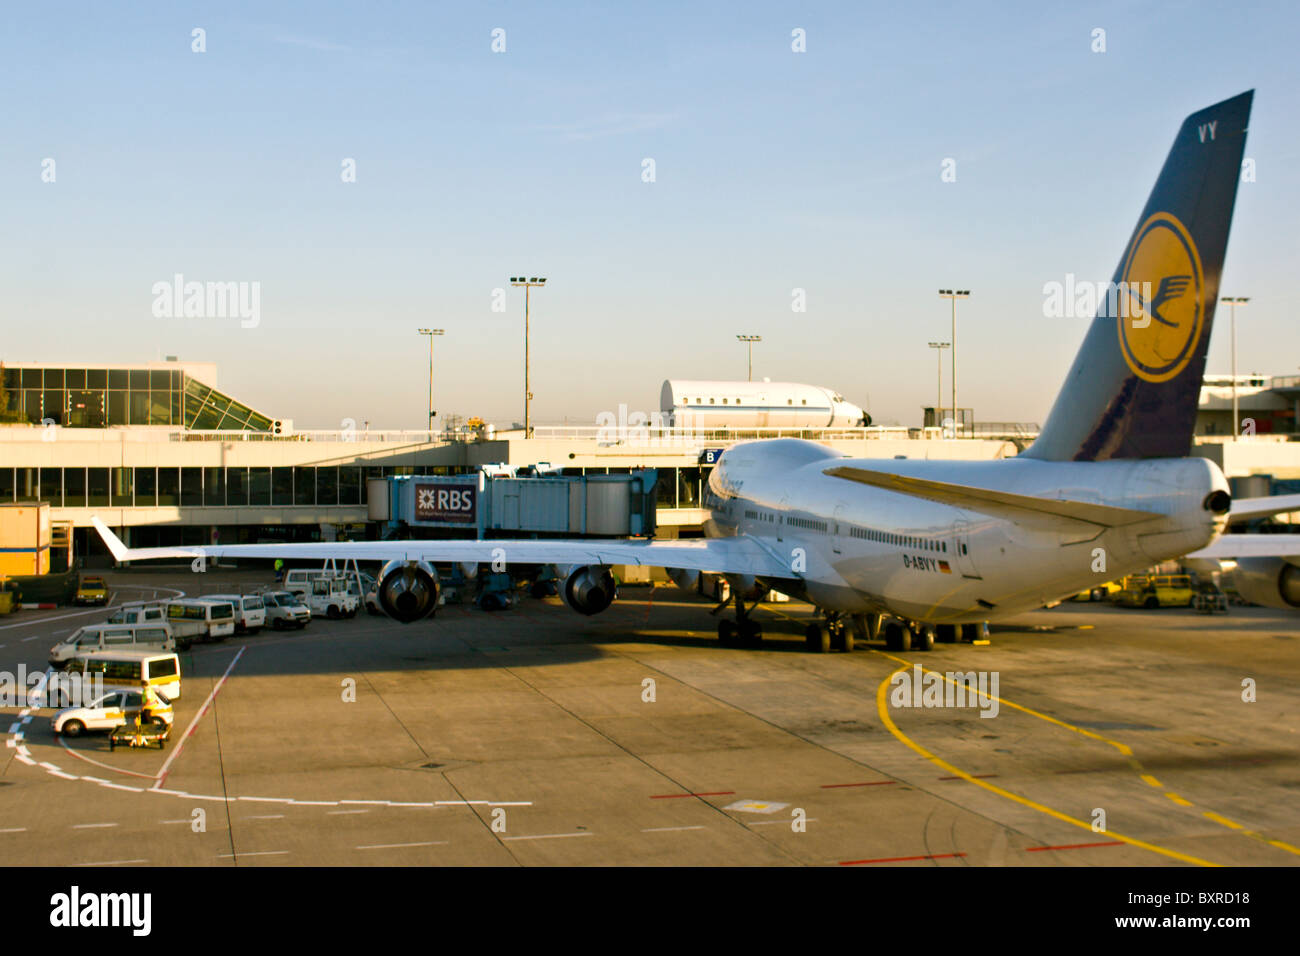 FRANKFORT, Alemania: Lufthansa 747 Avión en la puerta de embarque en el aeropuerto internacional de Francfort o Frankfurt am Main. Foto de stock